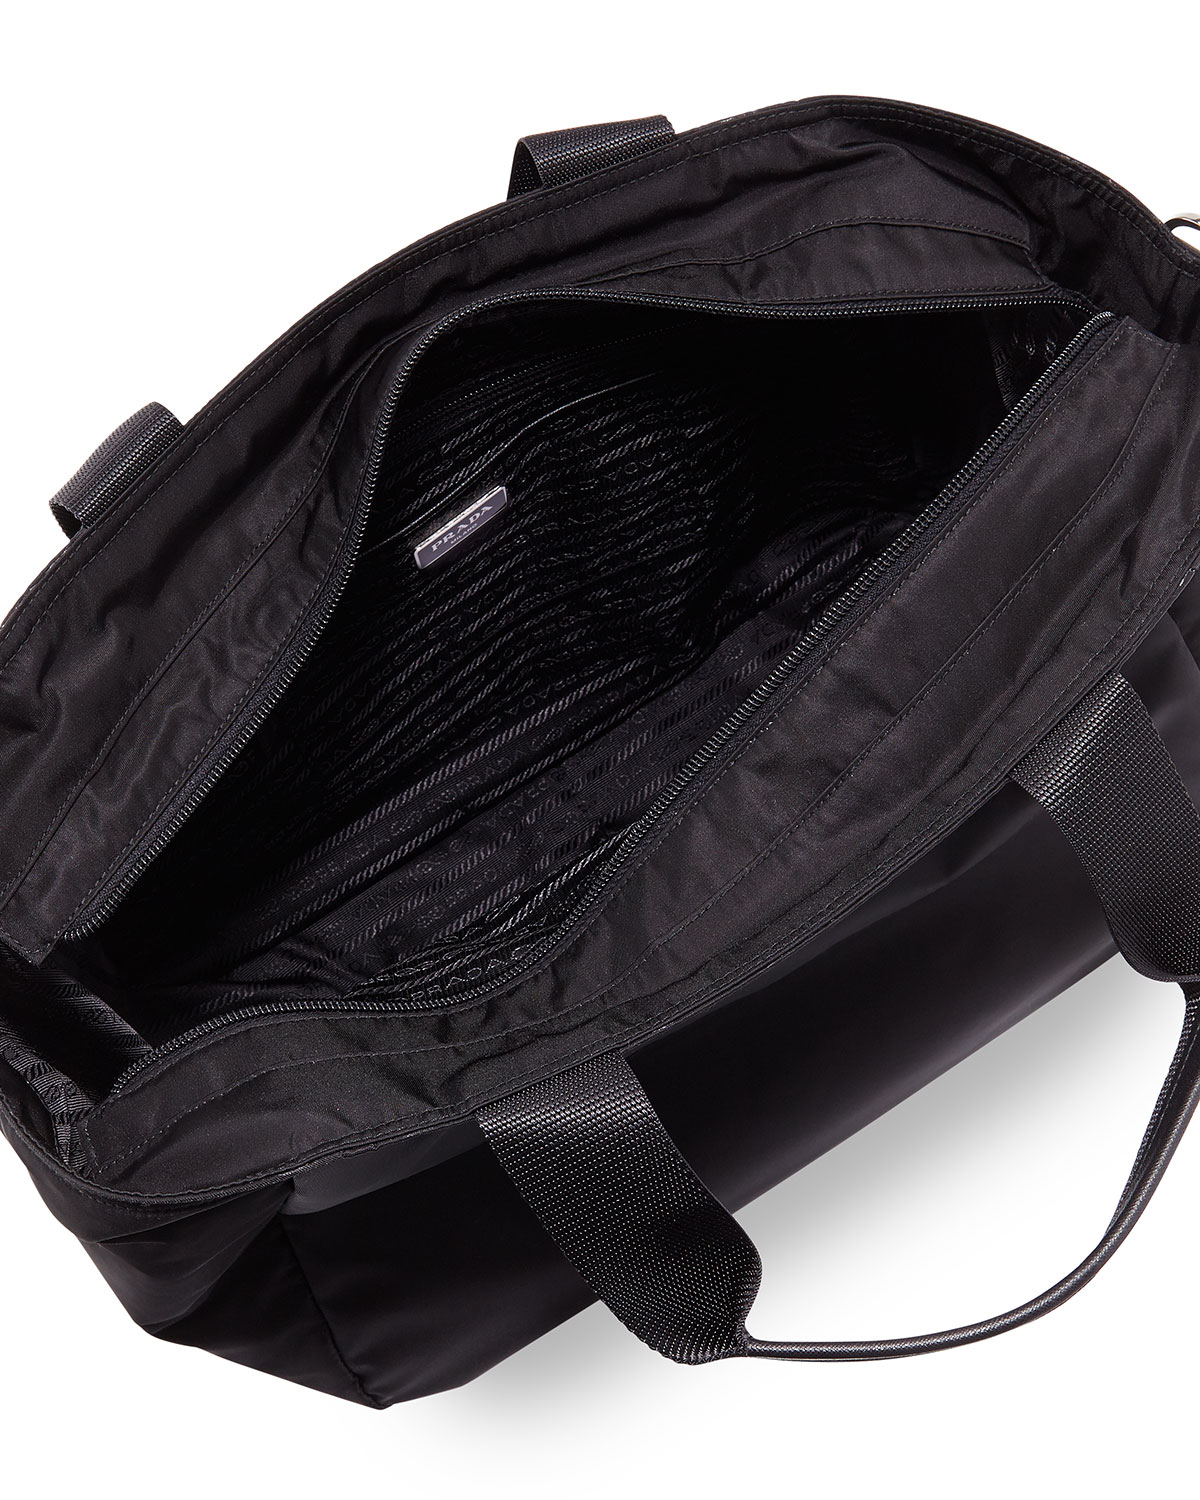 Prada Vela Nylon Tote Bag With Strap in Black - Lyst